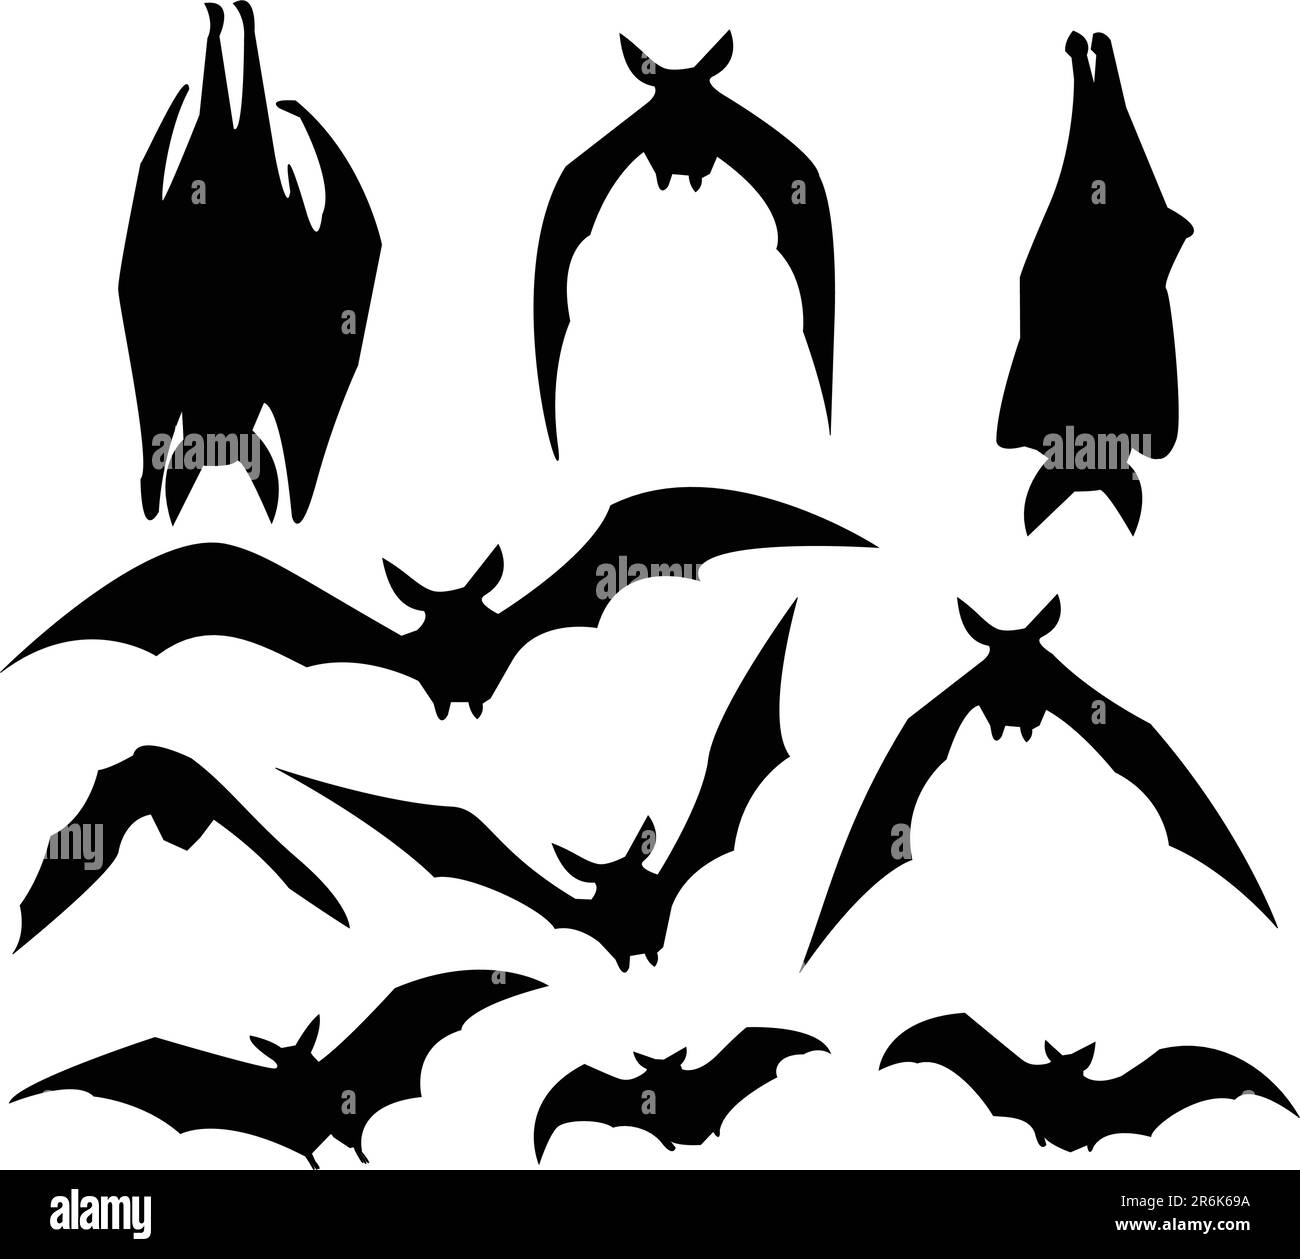 Bat silhouette di vari movimenti, per l'utilizzo di progettazione. Illustrazione Vettoriale